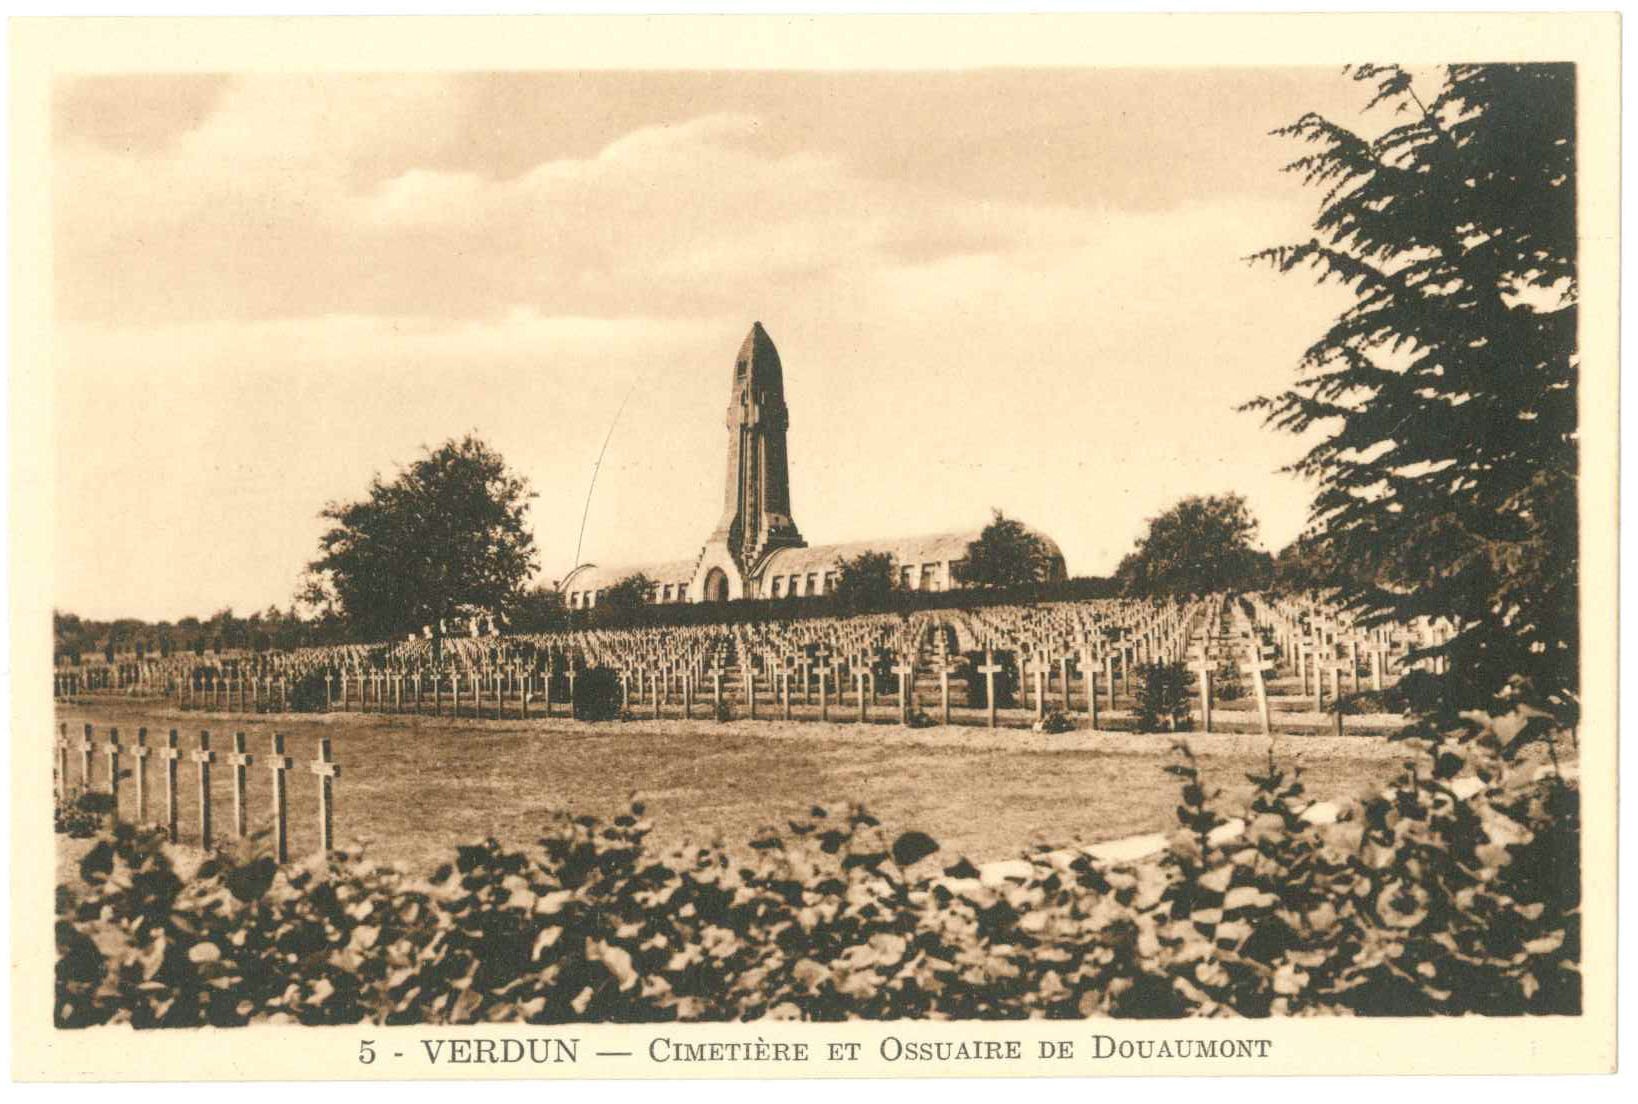 Verdun. Cimetière et Ossuaire de Douaumont (Kurt Tucholsky Literaturmuseum CC BY-NC-SA)